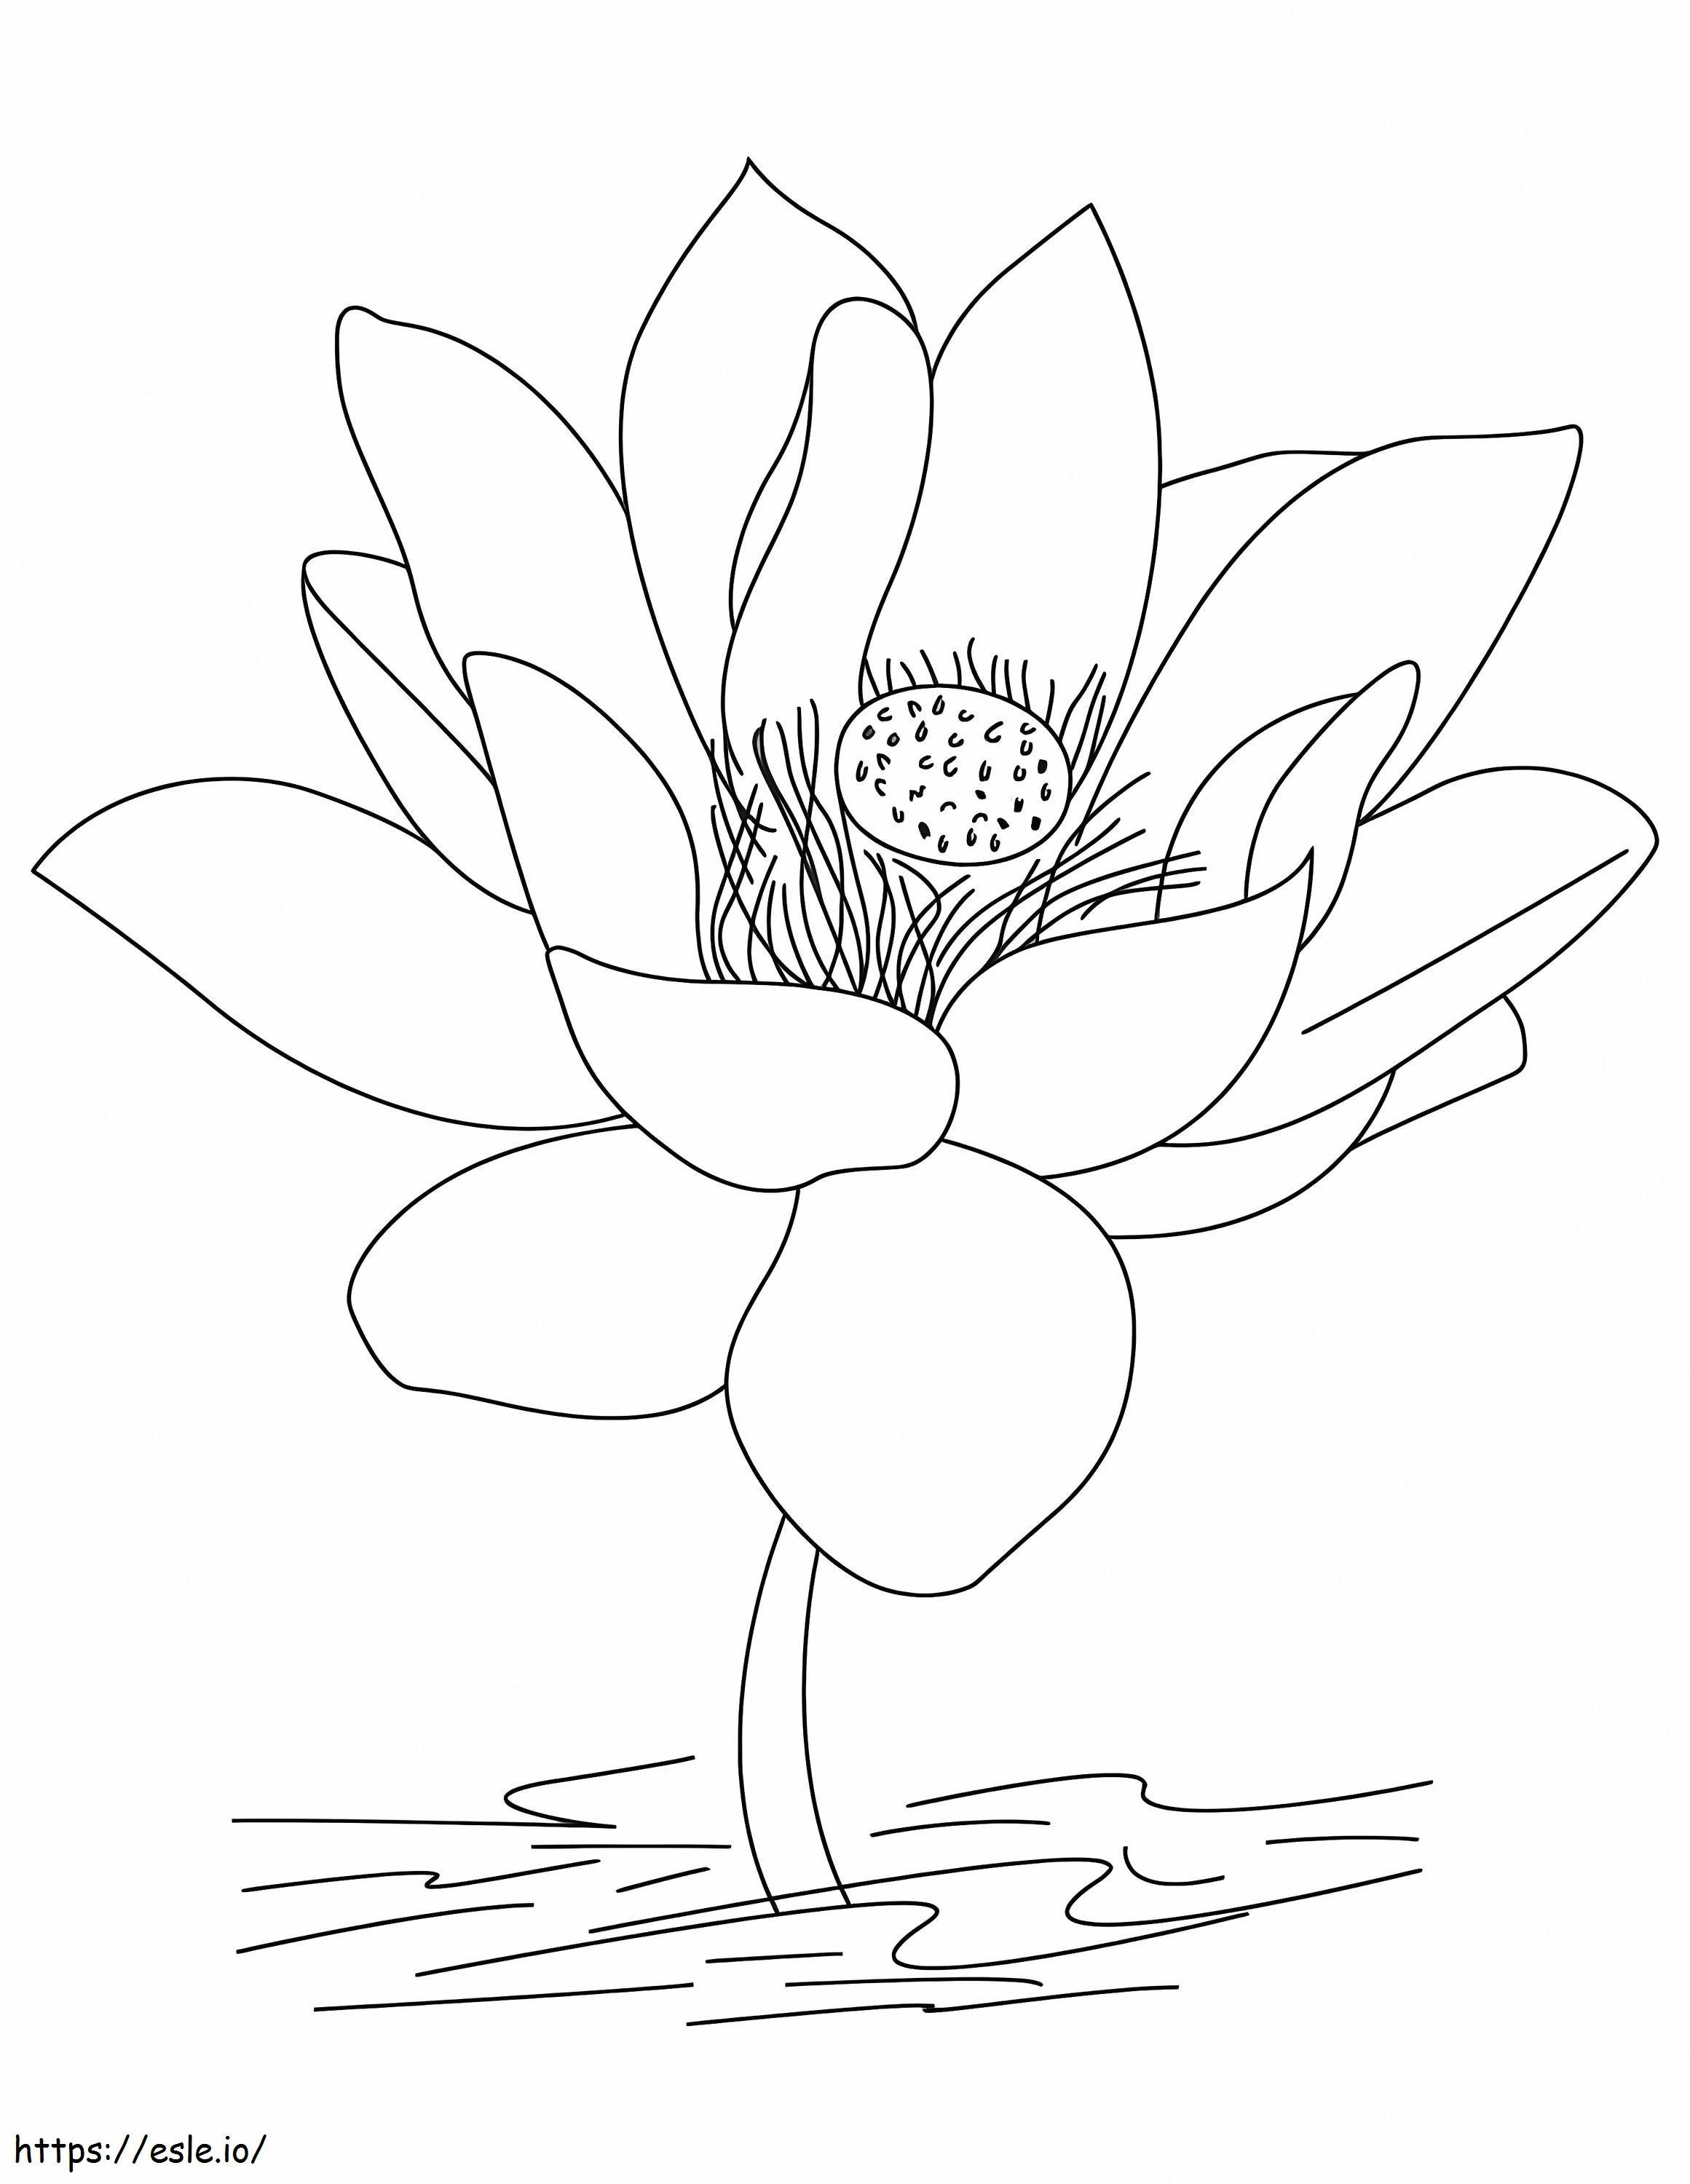 Big Lotus coloring page